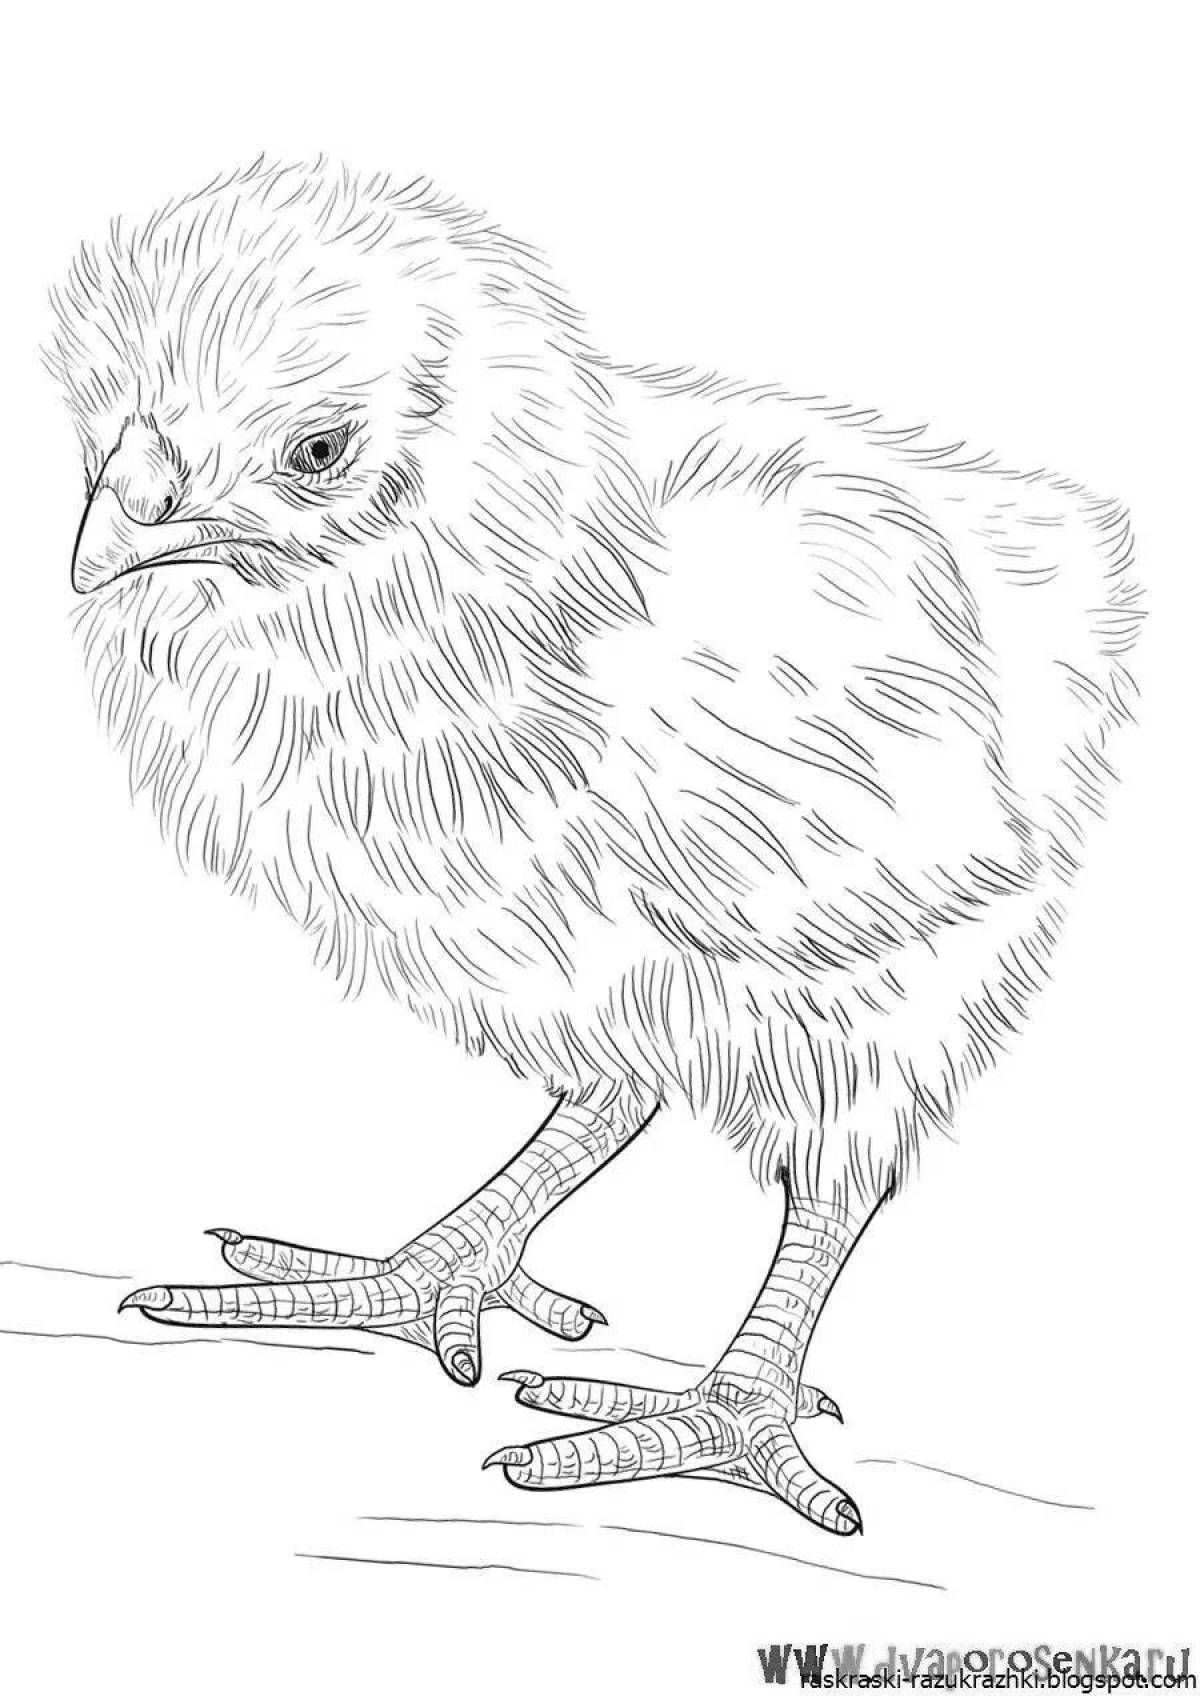 Очаровательный рисунок цыпленка для детей